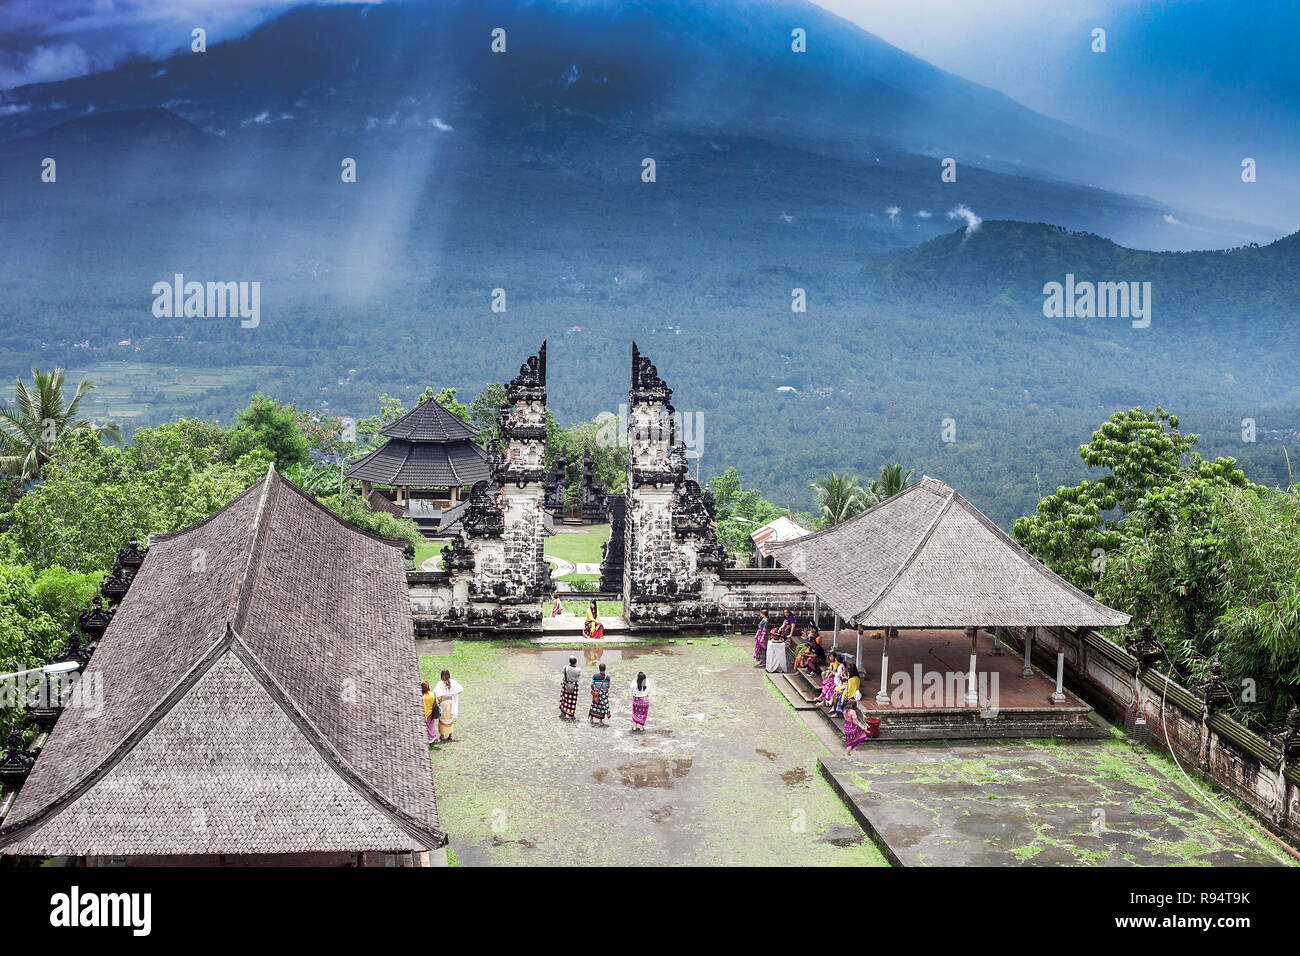 Bali, Indonesien - 08 März 2018: Sommer Landschaft mit Pura Penataran Agung Lempuyang Tempel und Touristen gruppe. Candi bentar und Blick auf Agung mount Stockfoto